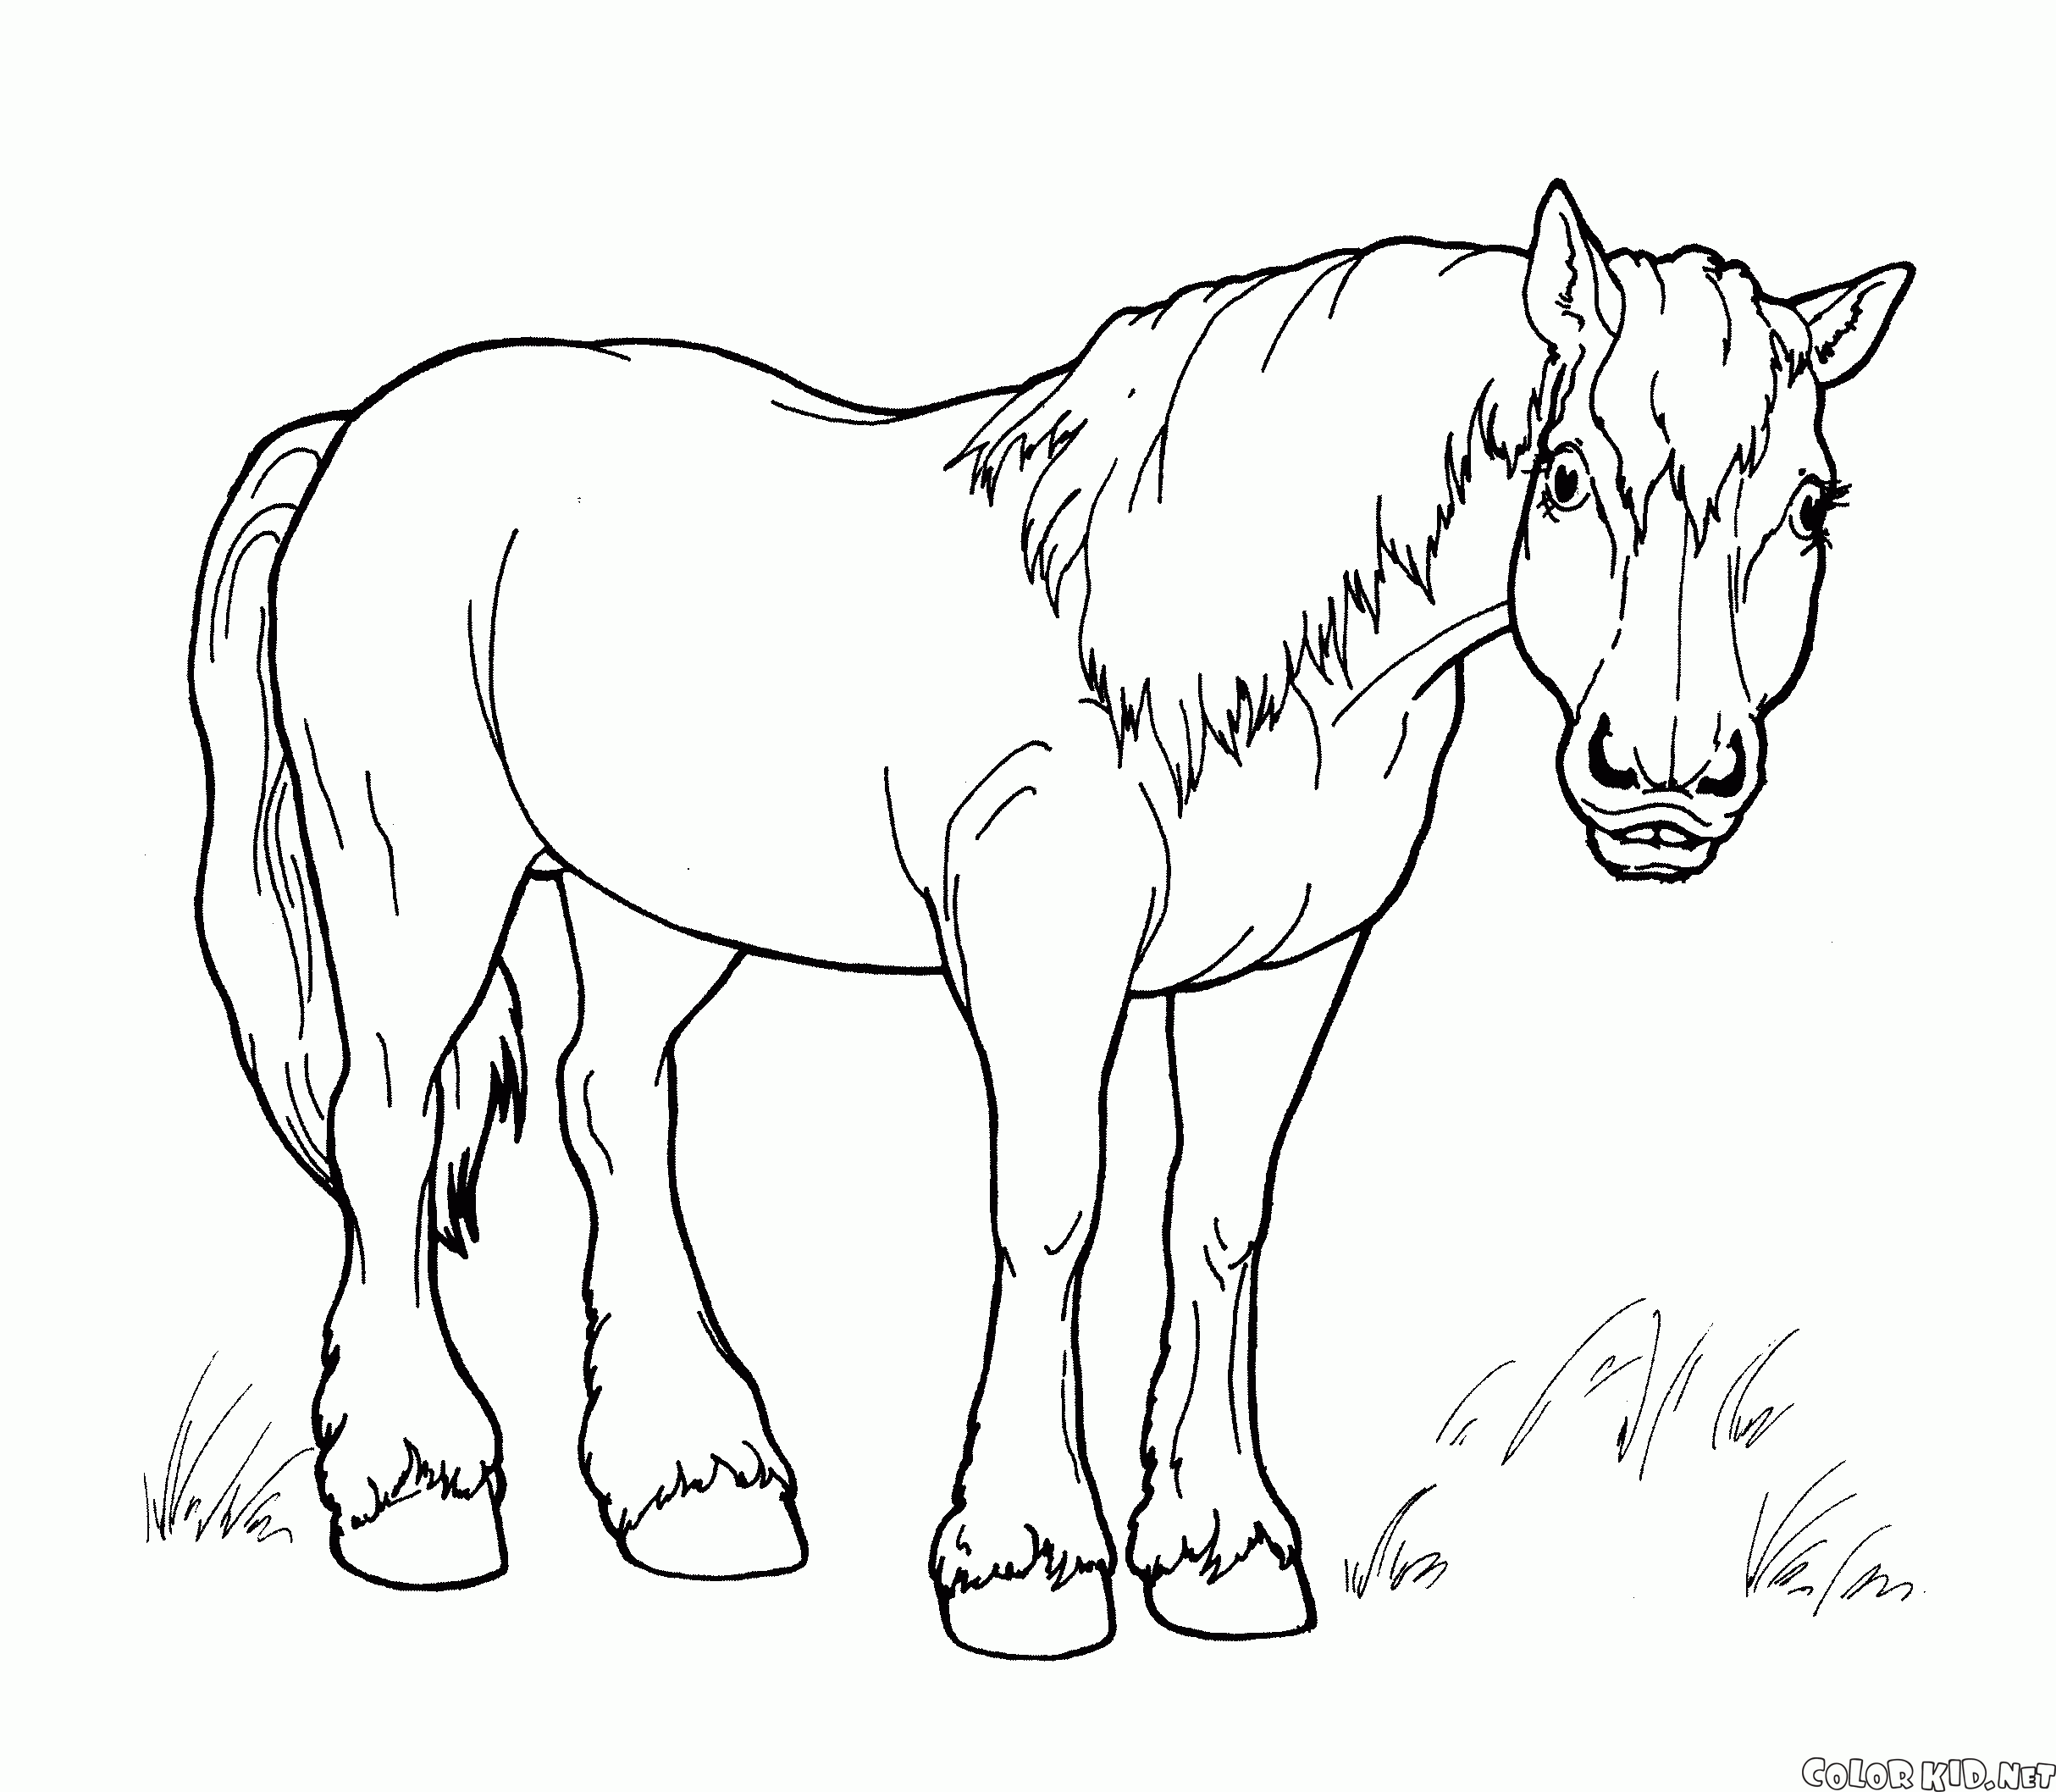 Coloring page - Banhando o cavalo